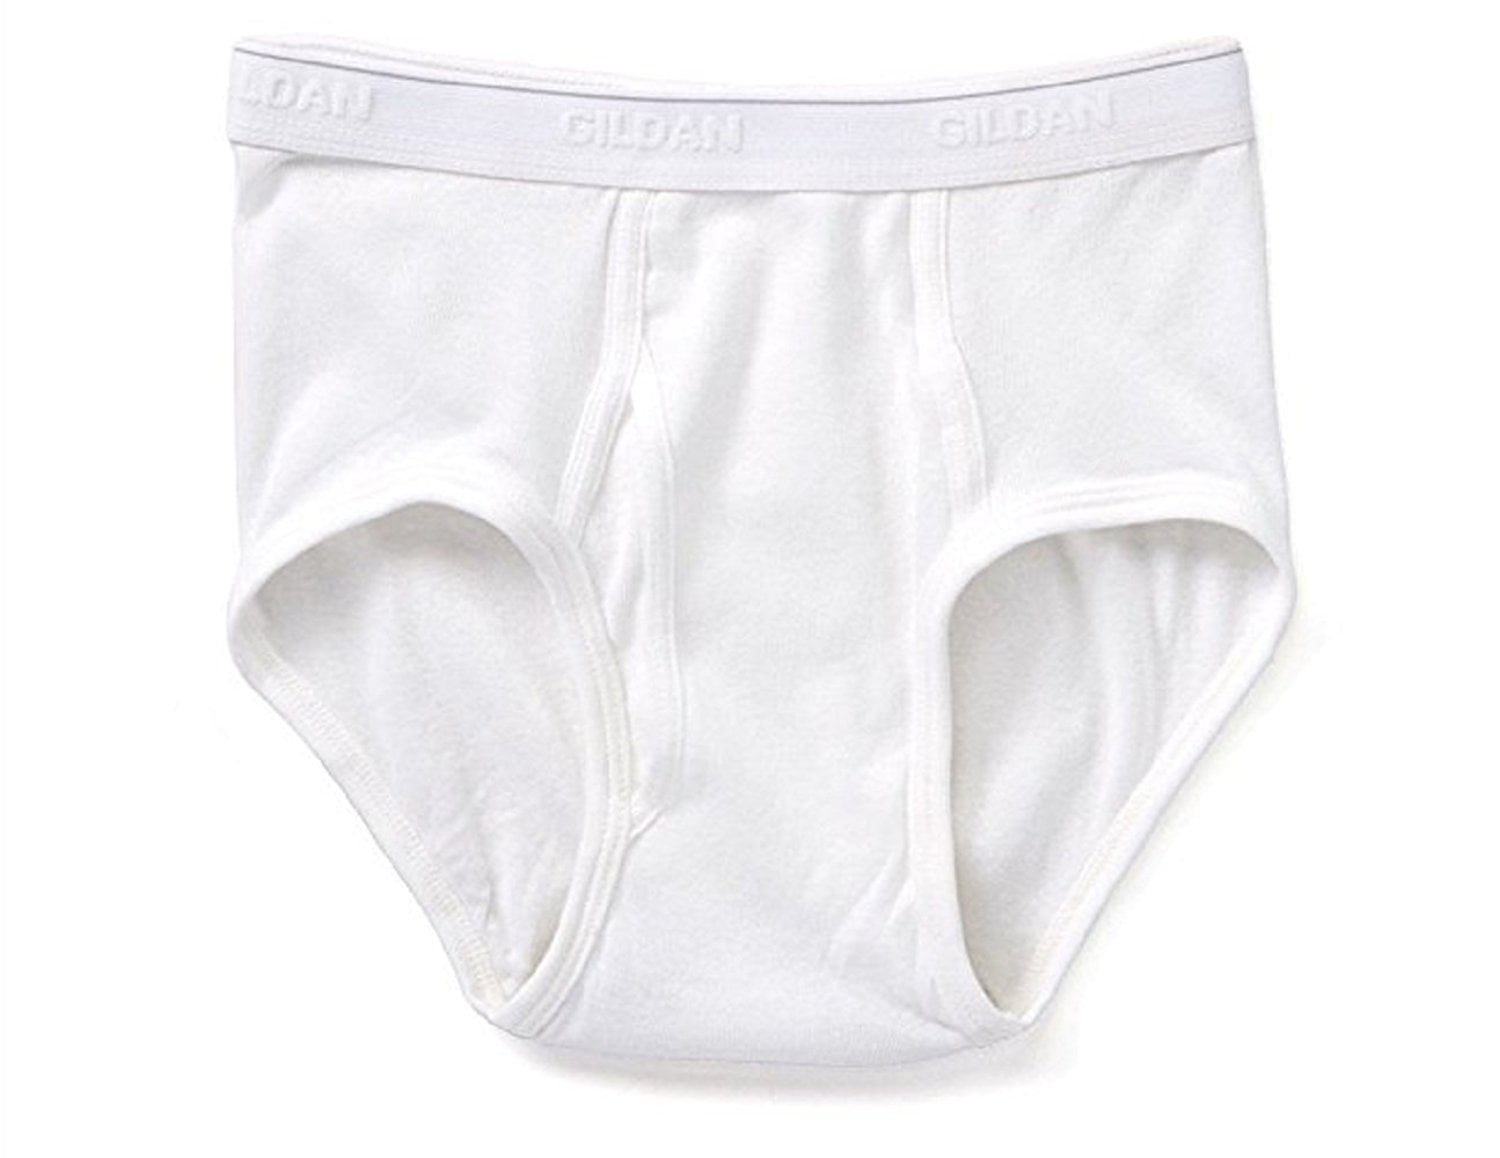 Gildan Mens Value 10-Pack 100% Cotton White Briefs Underwear